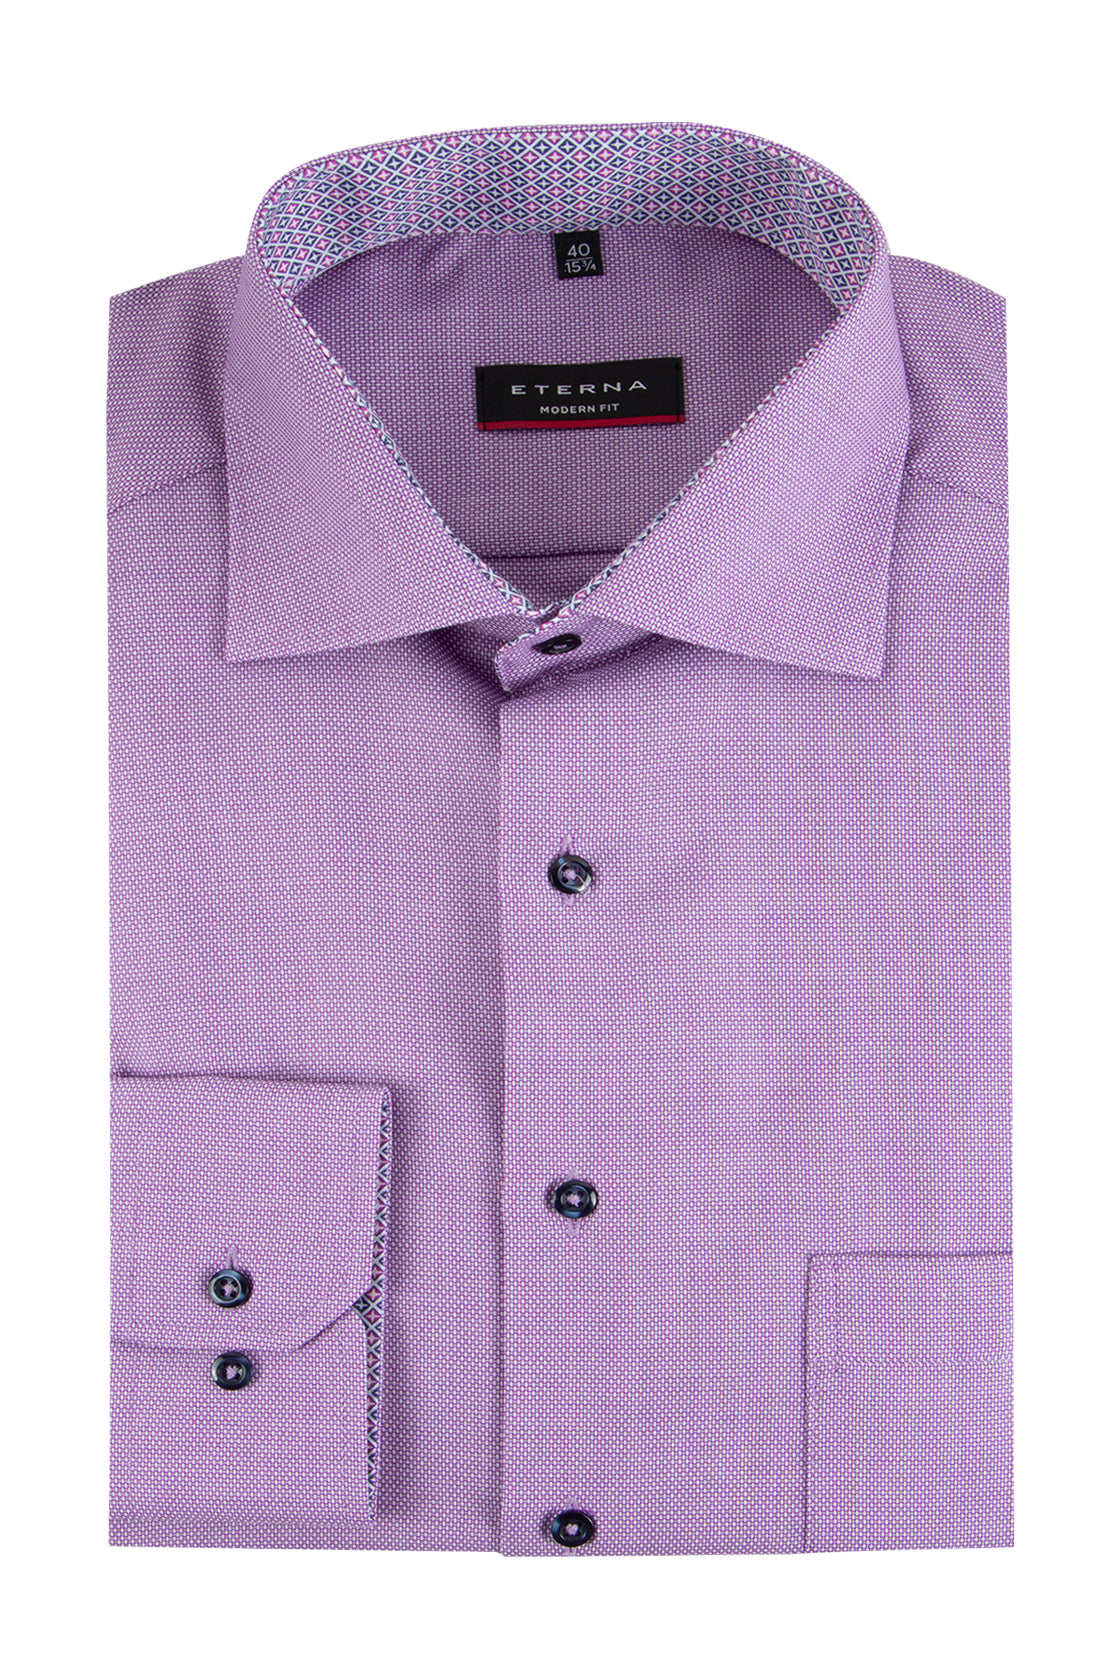 Eterna Modern Fit Business Shirt Purple